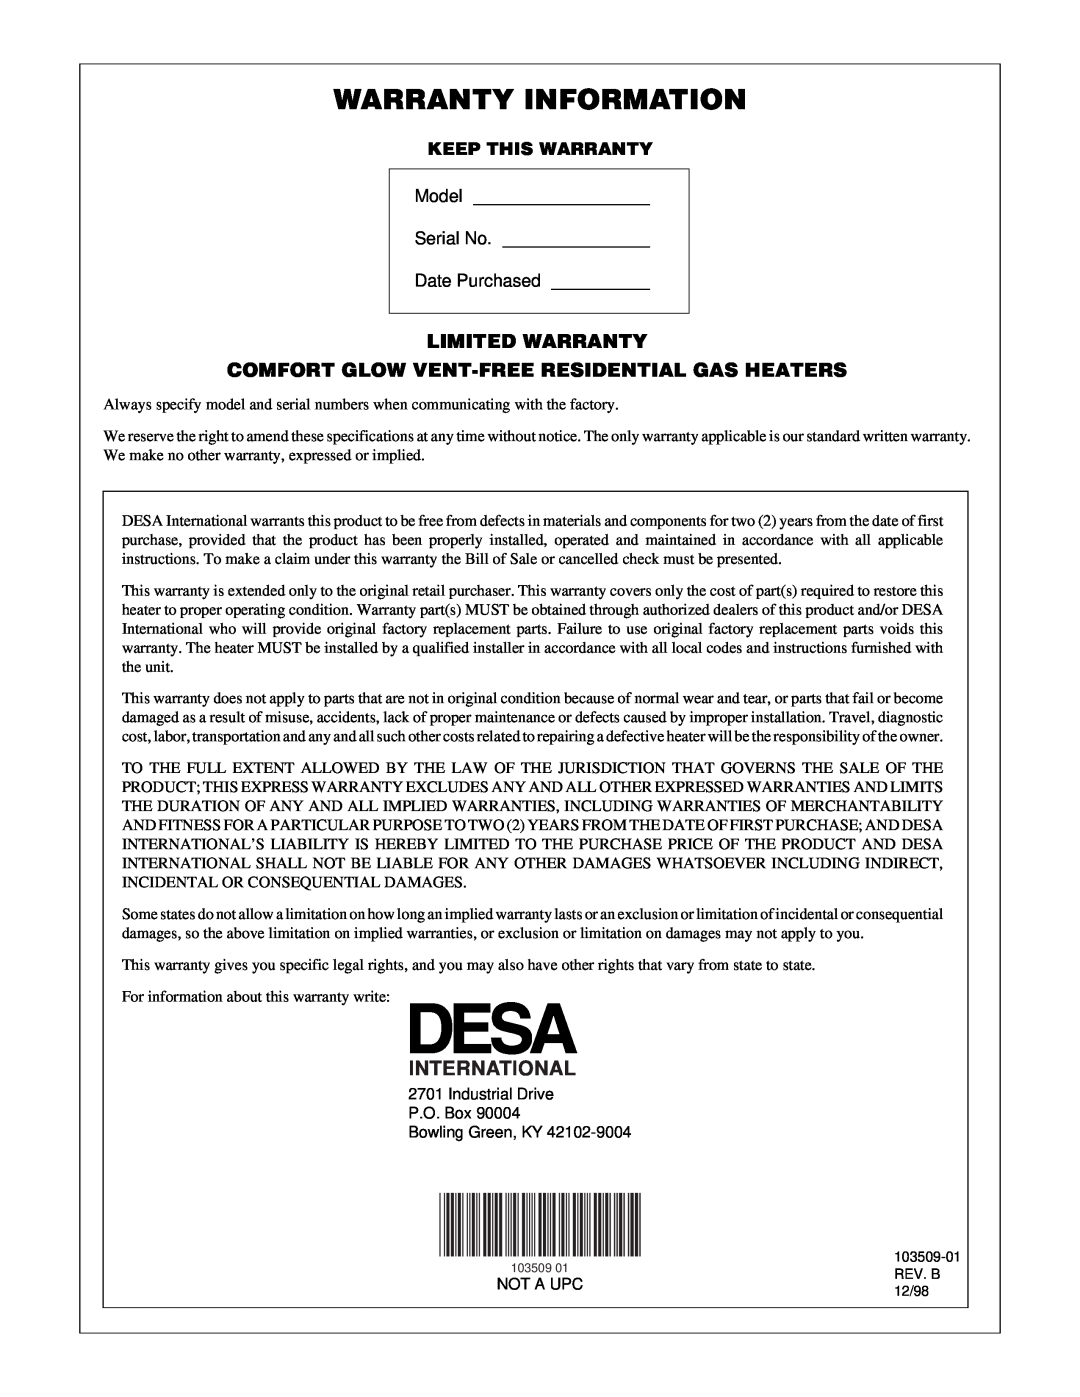 Desa Tech RFP28TC Warranty Information, Limited Warranty, Comfort Glow Vent-Freeresidential Gas Heaters, International 